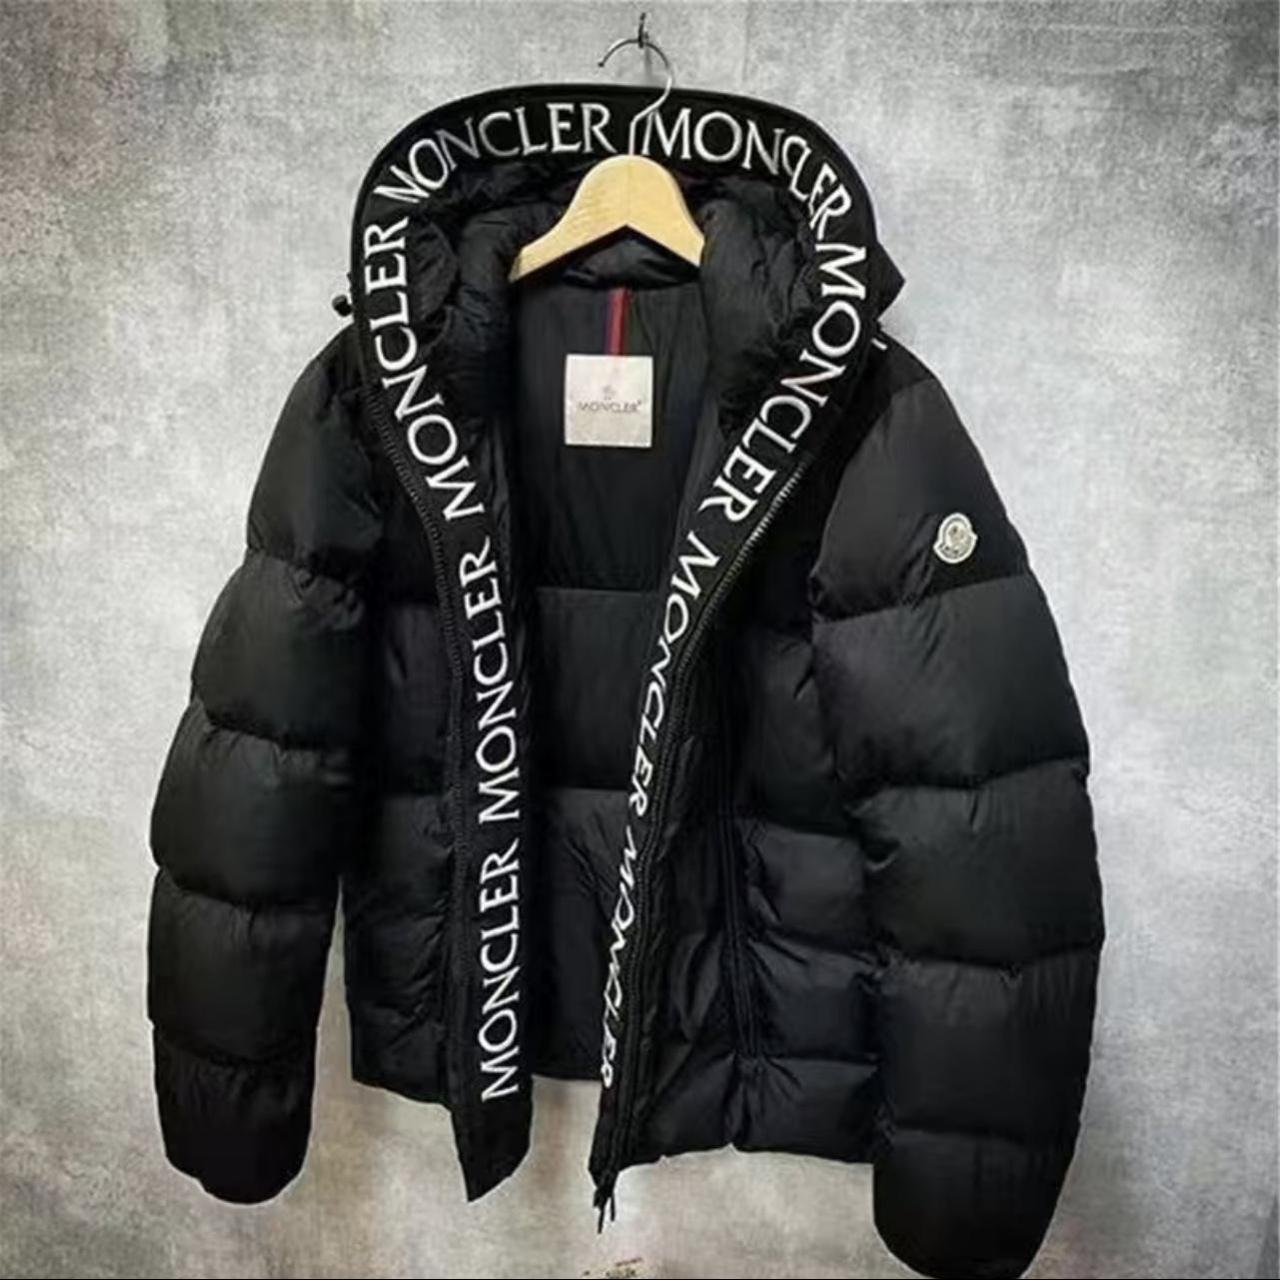 Brand new Moncler jacket - Depop